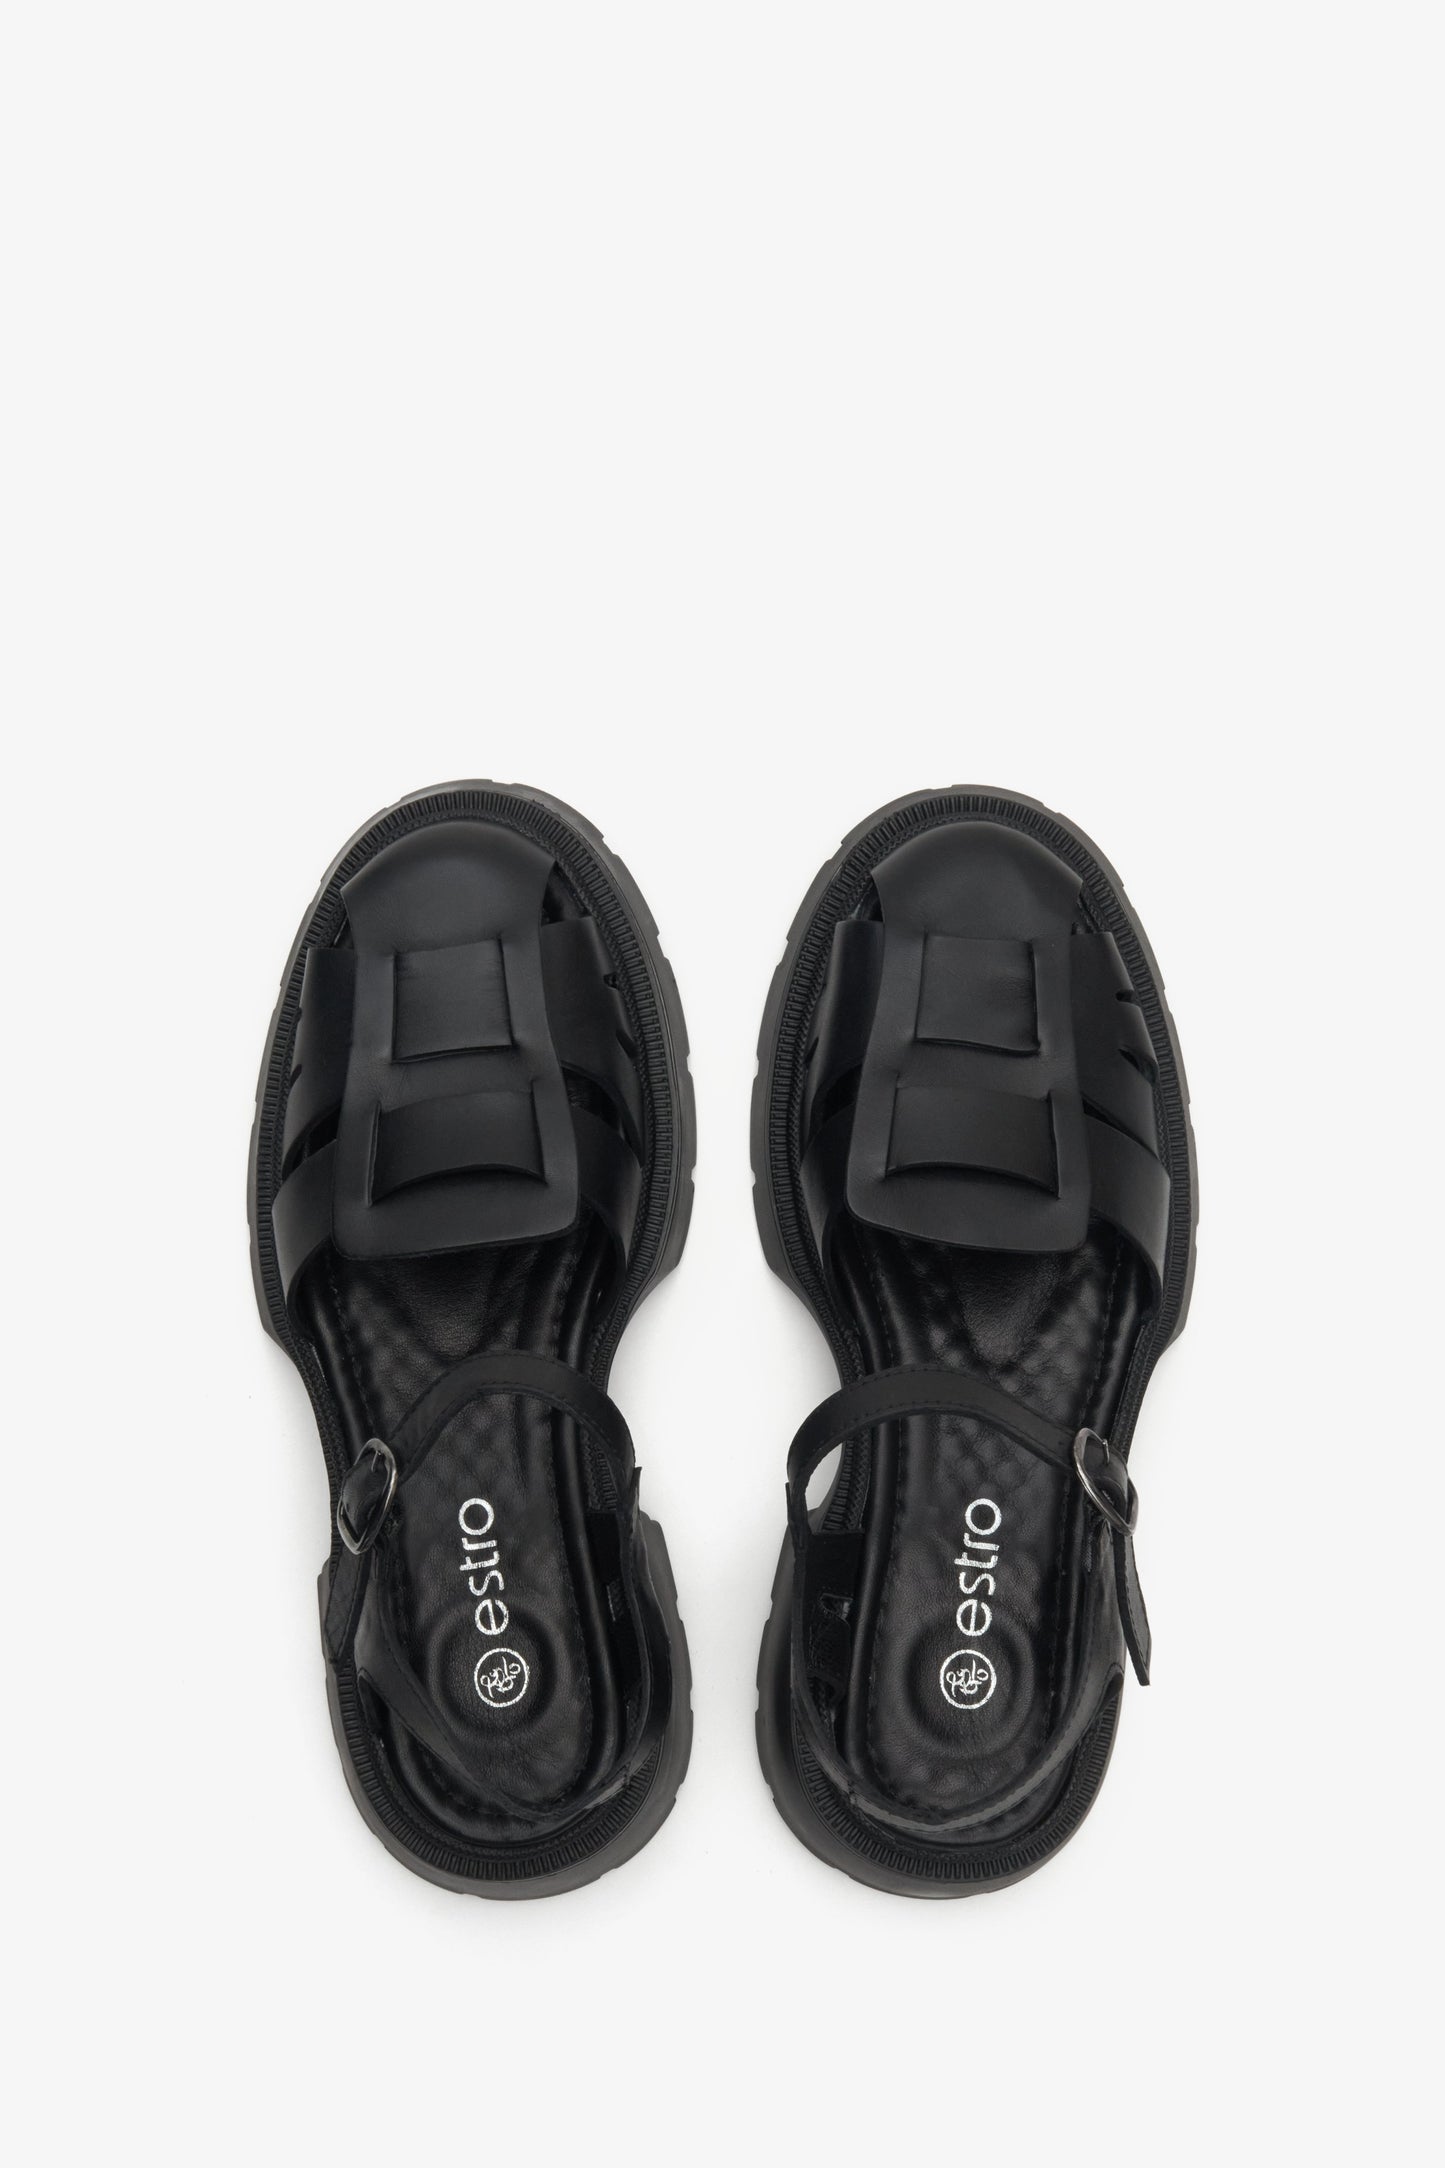 Damskie, skórzane sandały w kolorze czarnym Estro - prezentacja modelu z góry.